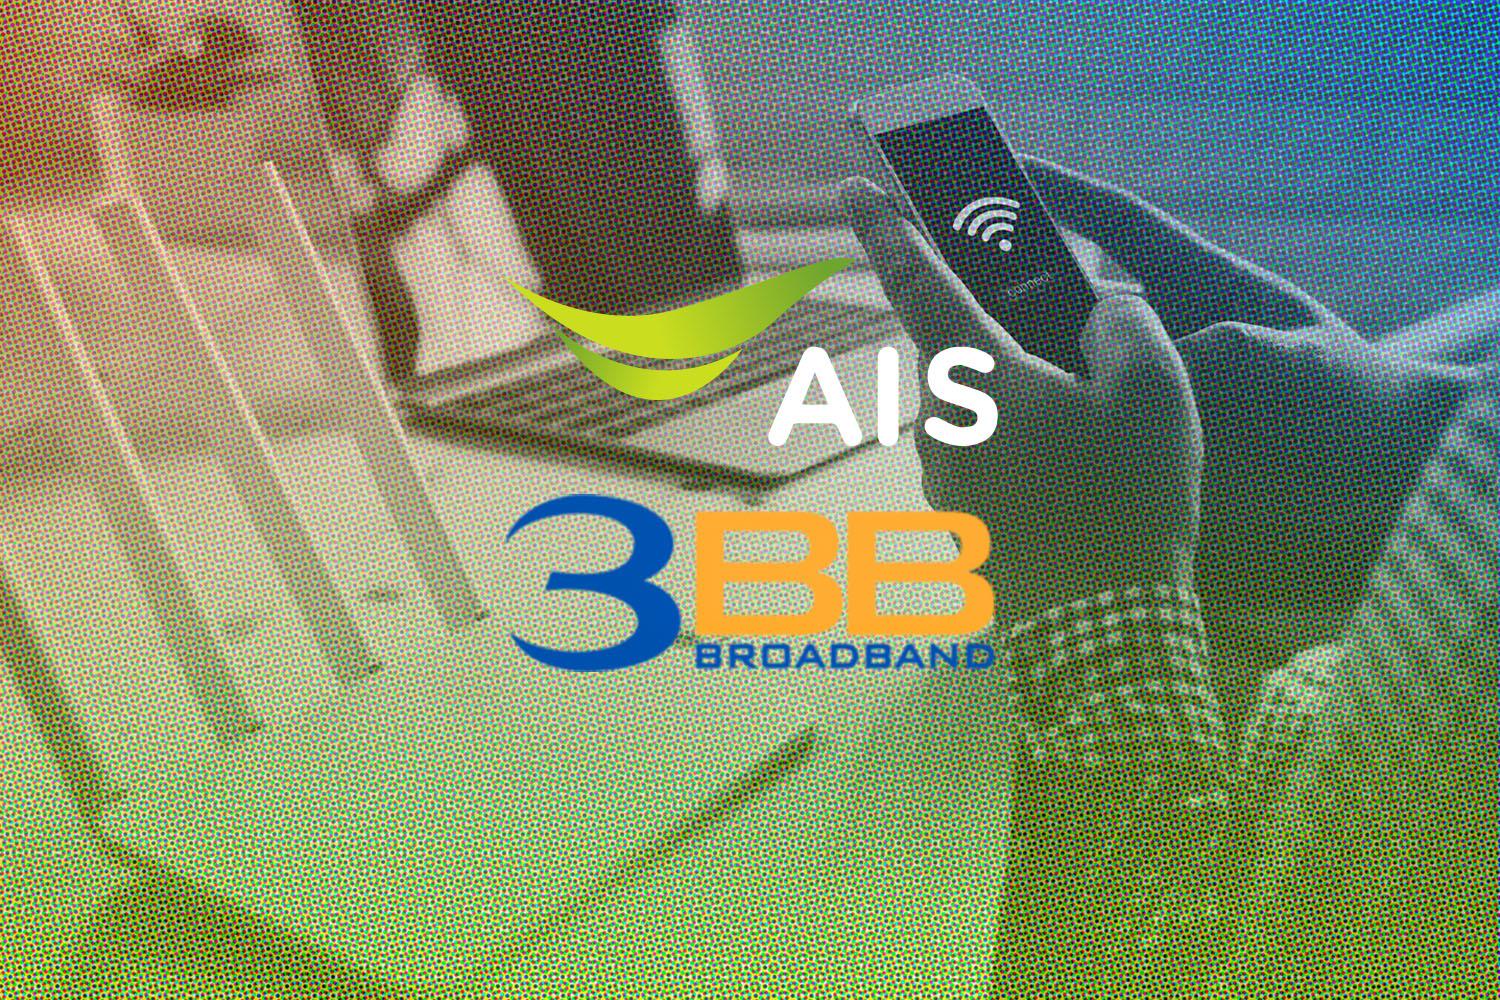 Deal-AIS-3BB-merger-broadband-internet-service-business-SPACEBAR-Hero